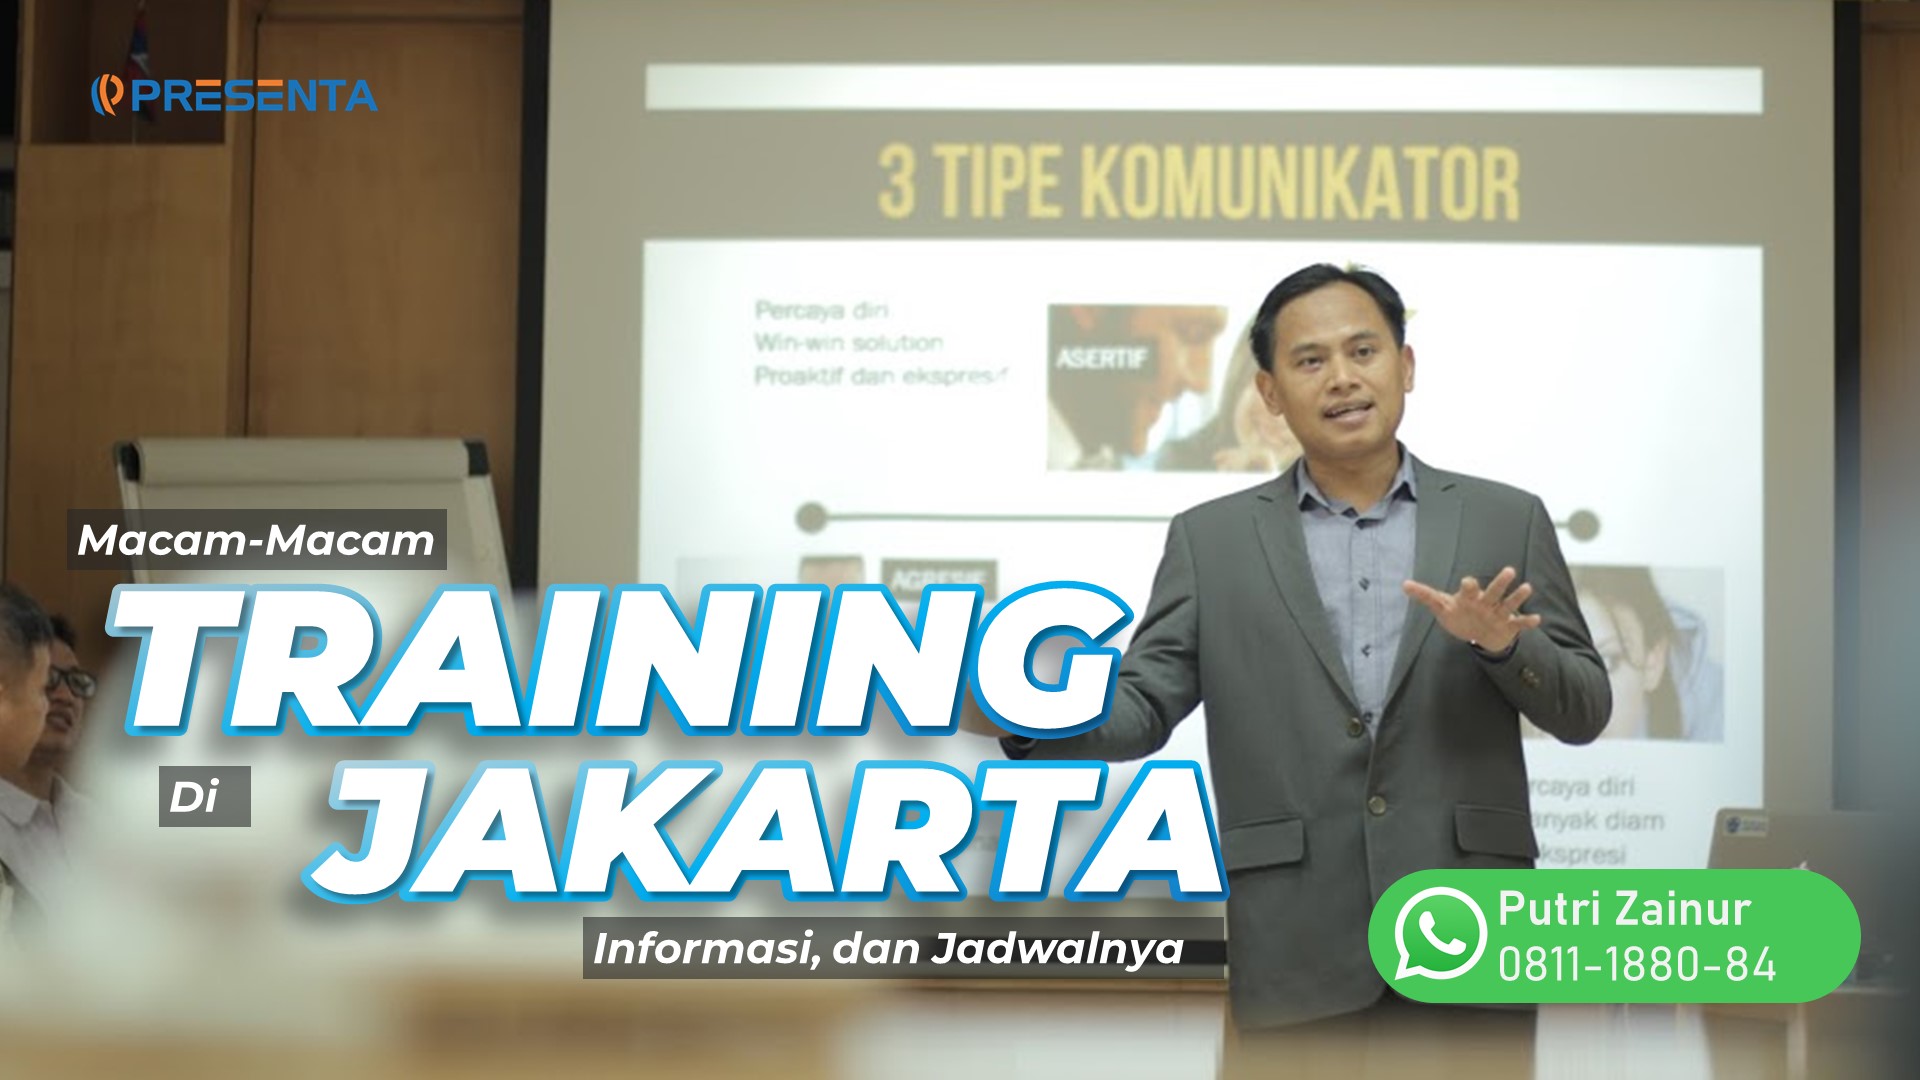 Macam-Macam Training di Jakarta, Informasi, dan Jadwalnya 1